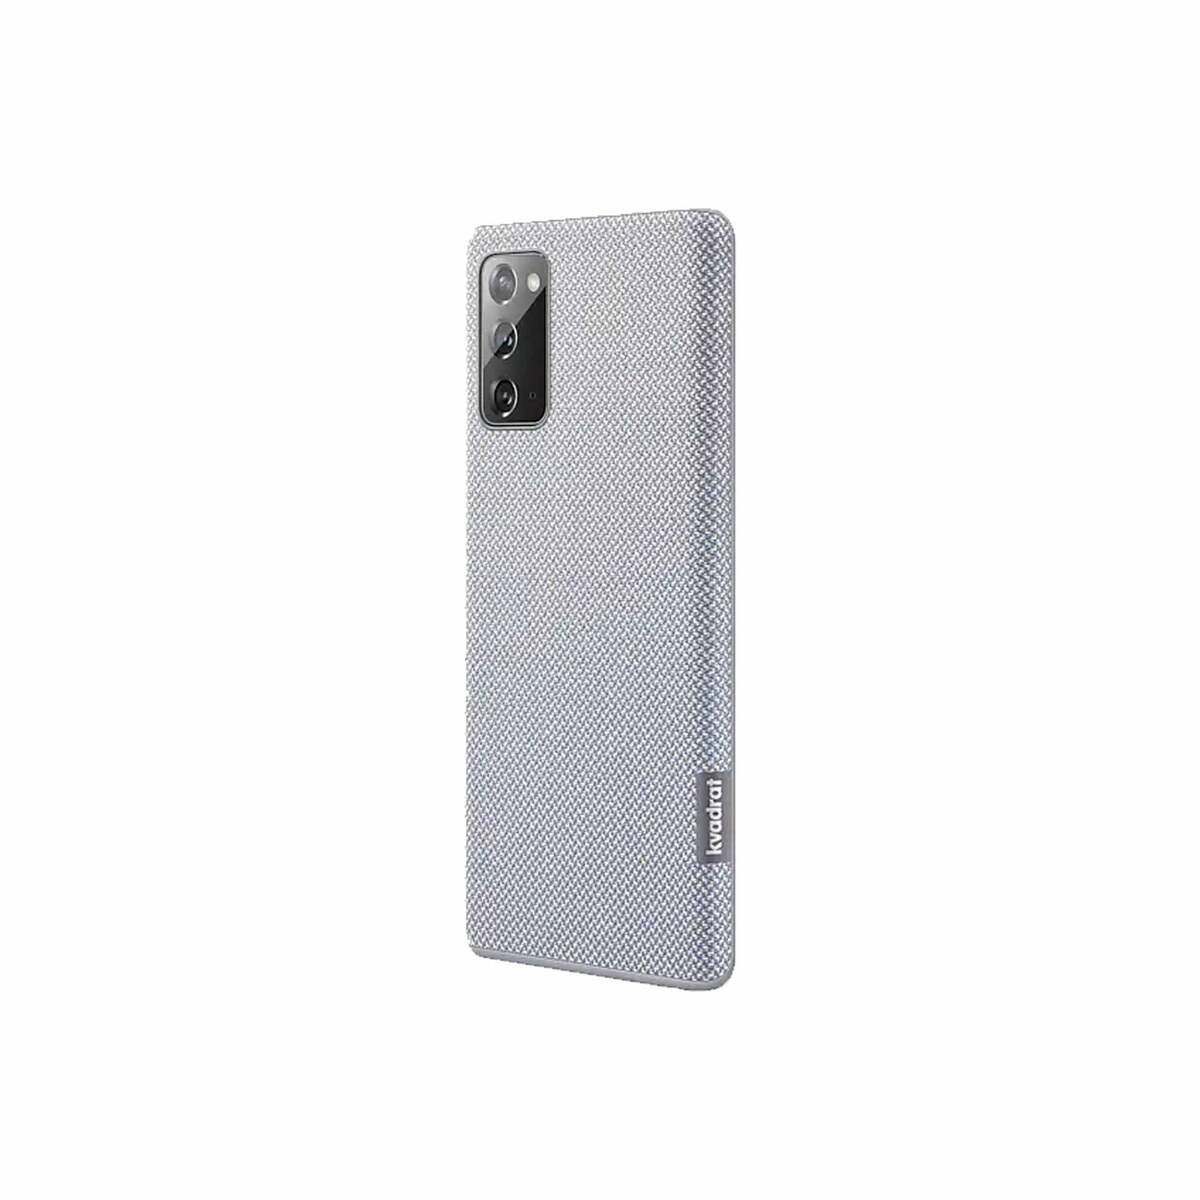 Samsung Galaxy Note20 Kvadrat Cover EF-XN980FJEGWW Gray